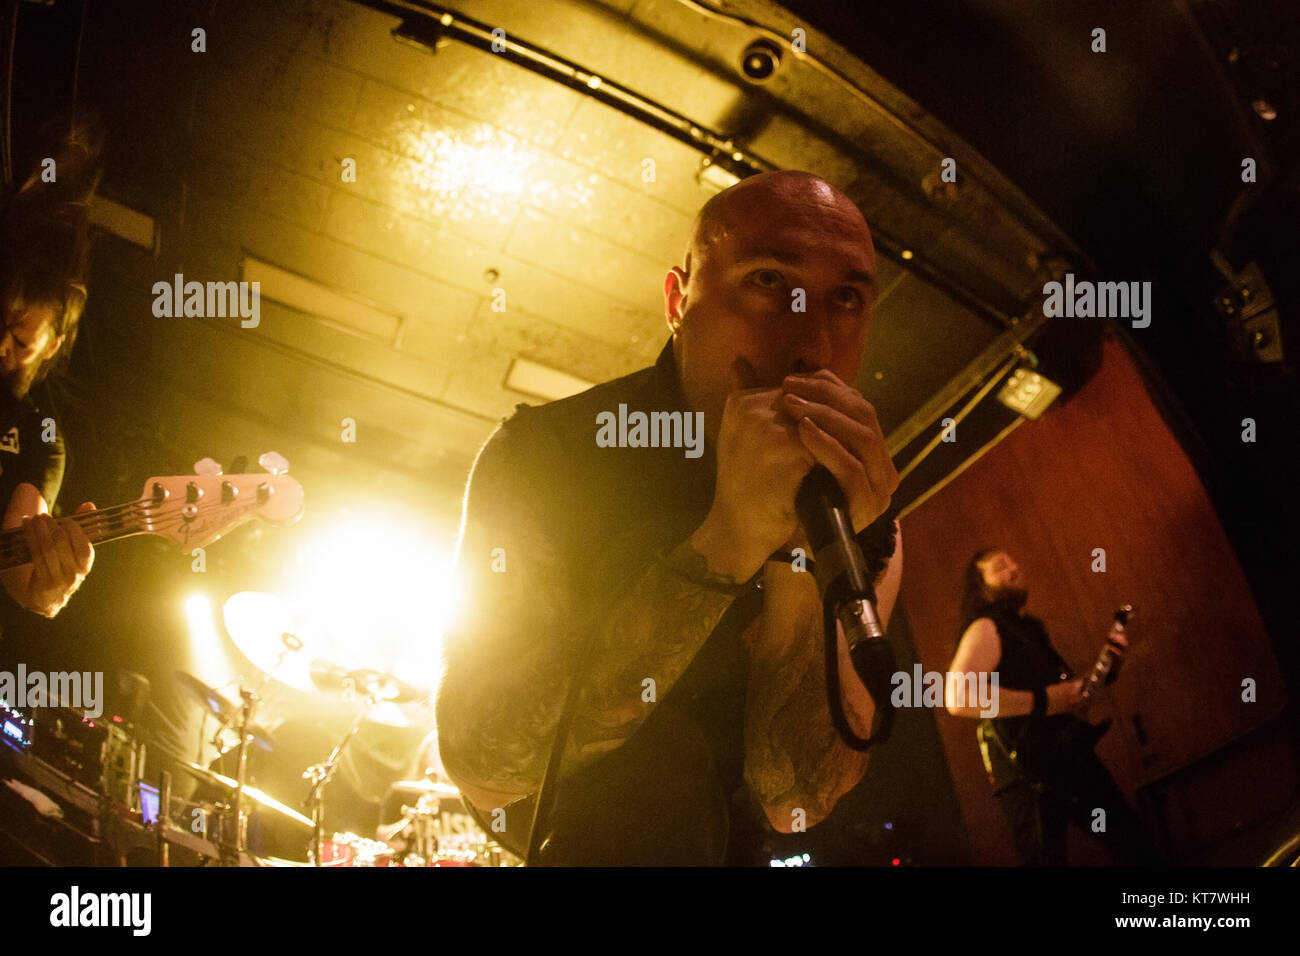 Le groupe de death metal belge Aborted effectue un concert live à Vega à Copenhague. Ici le chanteur Sven de Caluwe est vu sur scène. Le Danemark, 11/01 2016. Banque D'Images